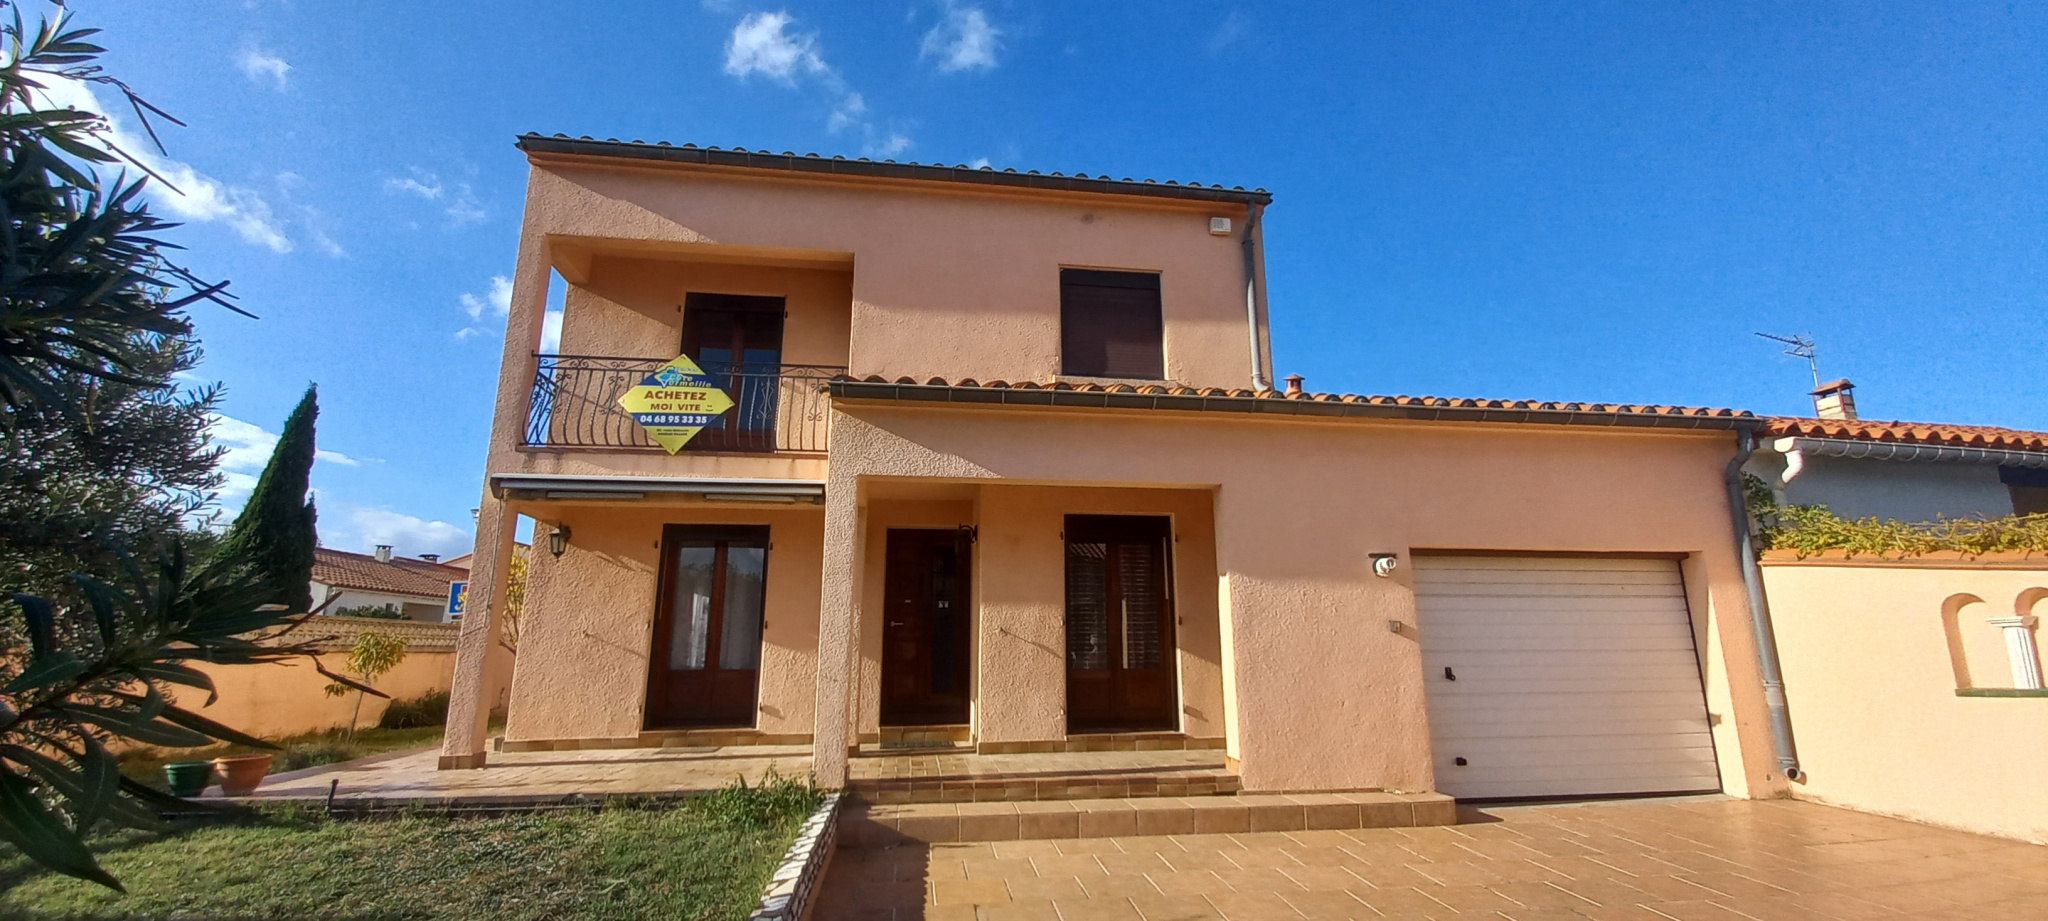 À vendre maison/villa de 121m2 à argelès-sur-mer (66700) - Photo 0'